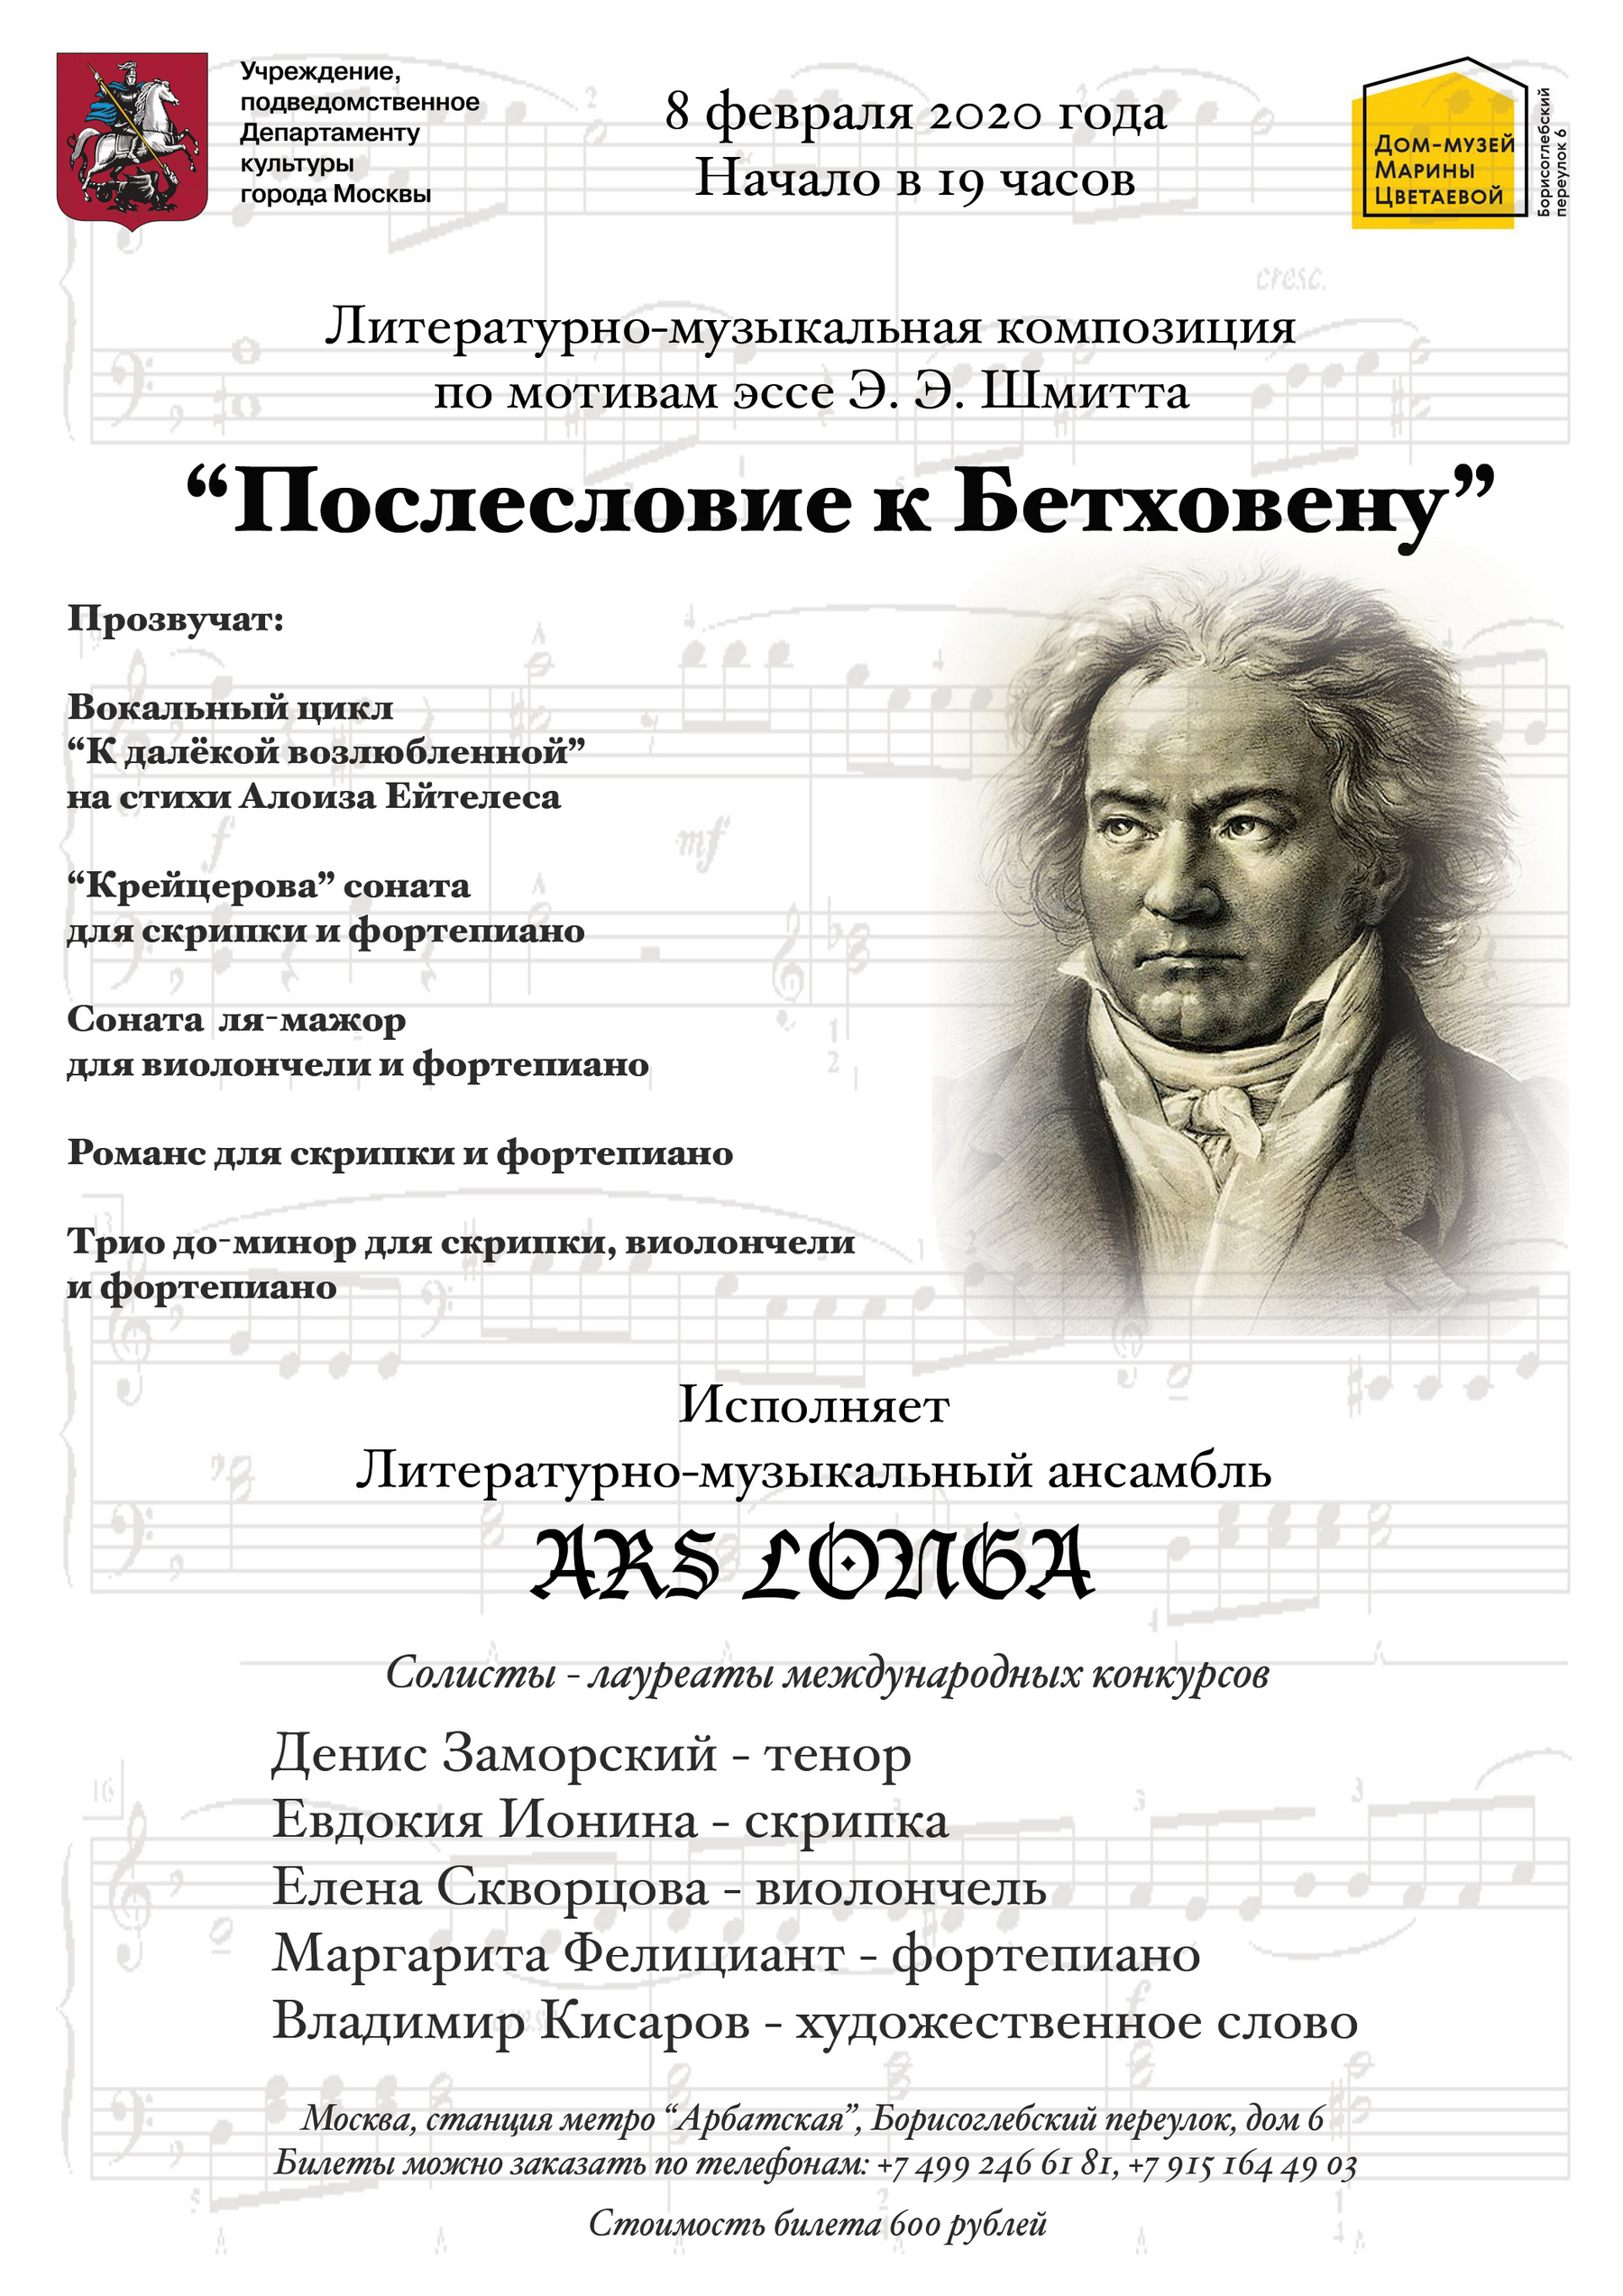 Иллюстрация: Ансамбль «Ars longa»: литературно-музыкальная композиция «Посвящение Бетховену»